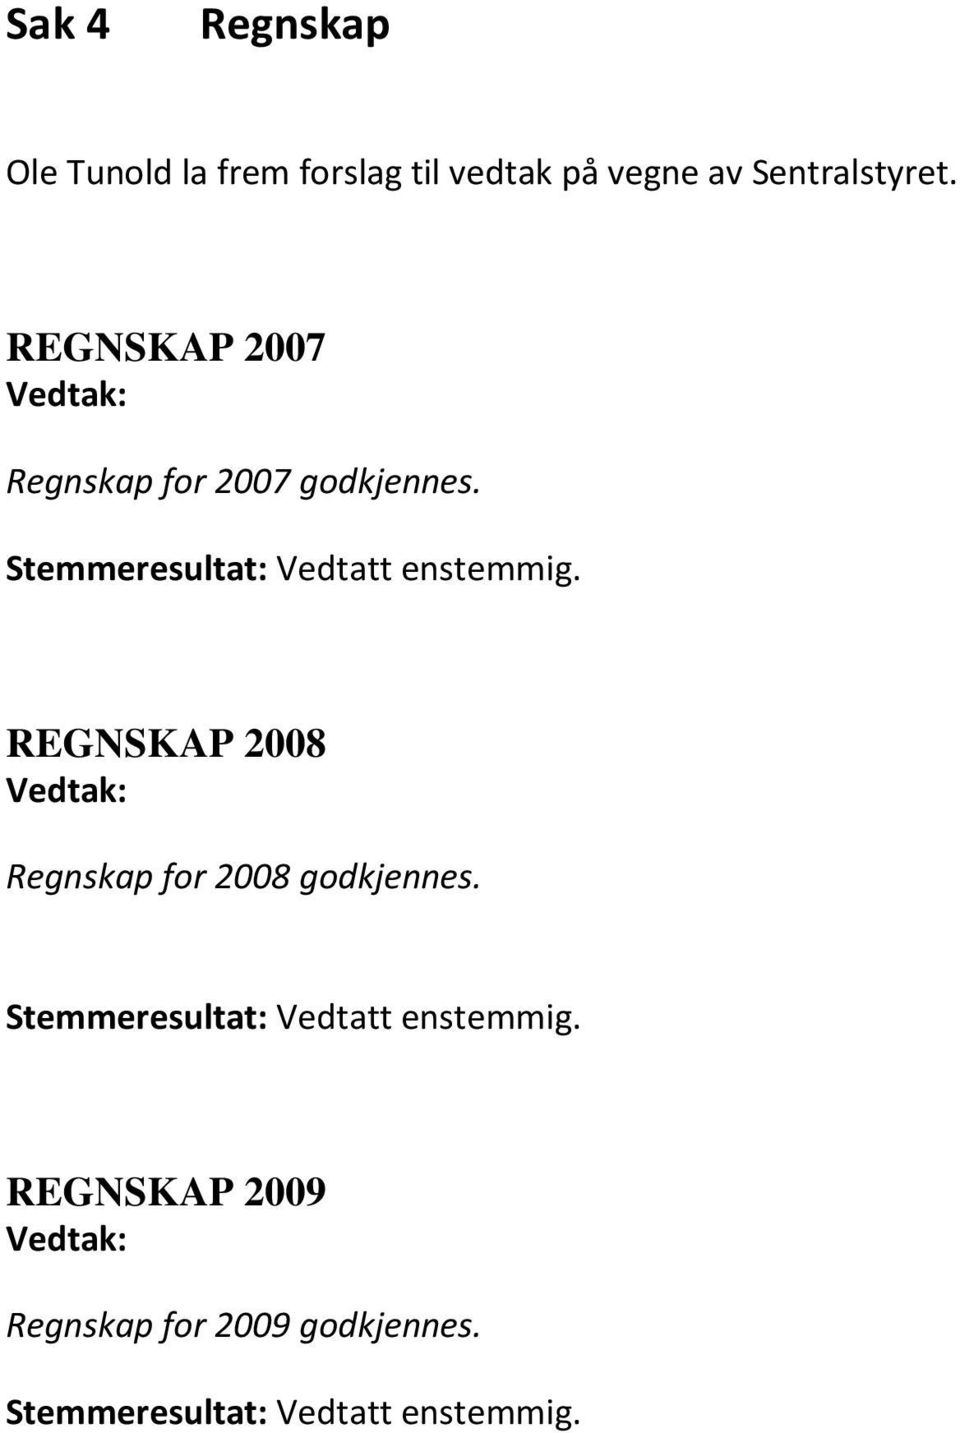 REGNSKAP 2008 Regnskap for 2008 godkjennes. Stemmeresultat: Vedtatt enstemmig.